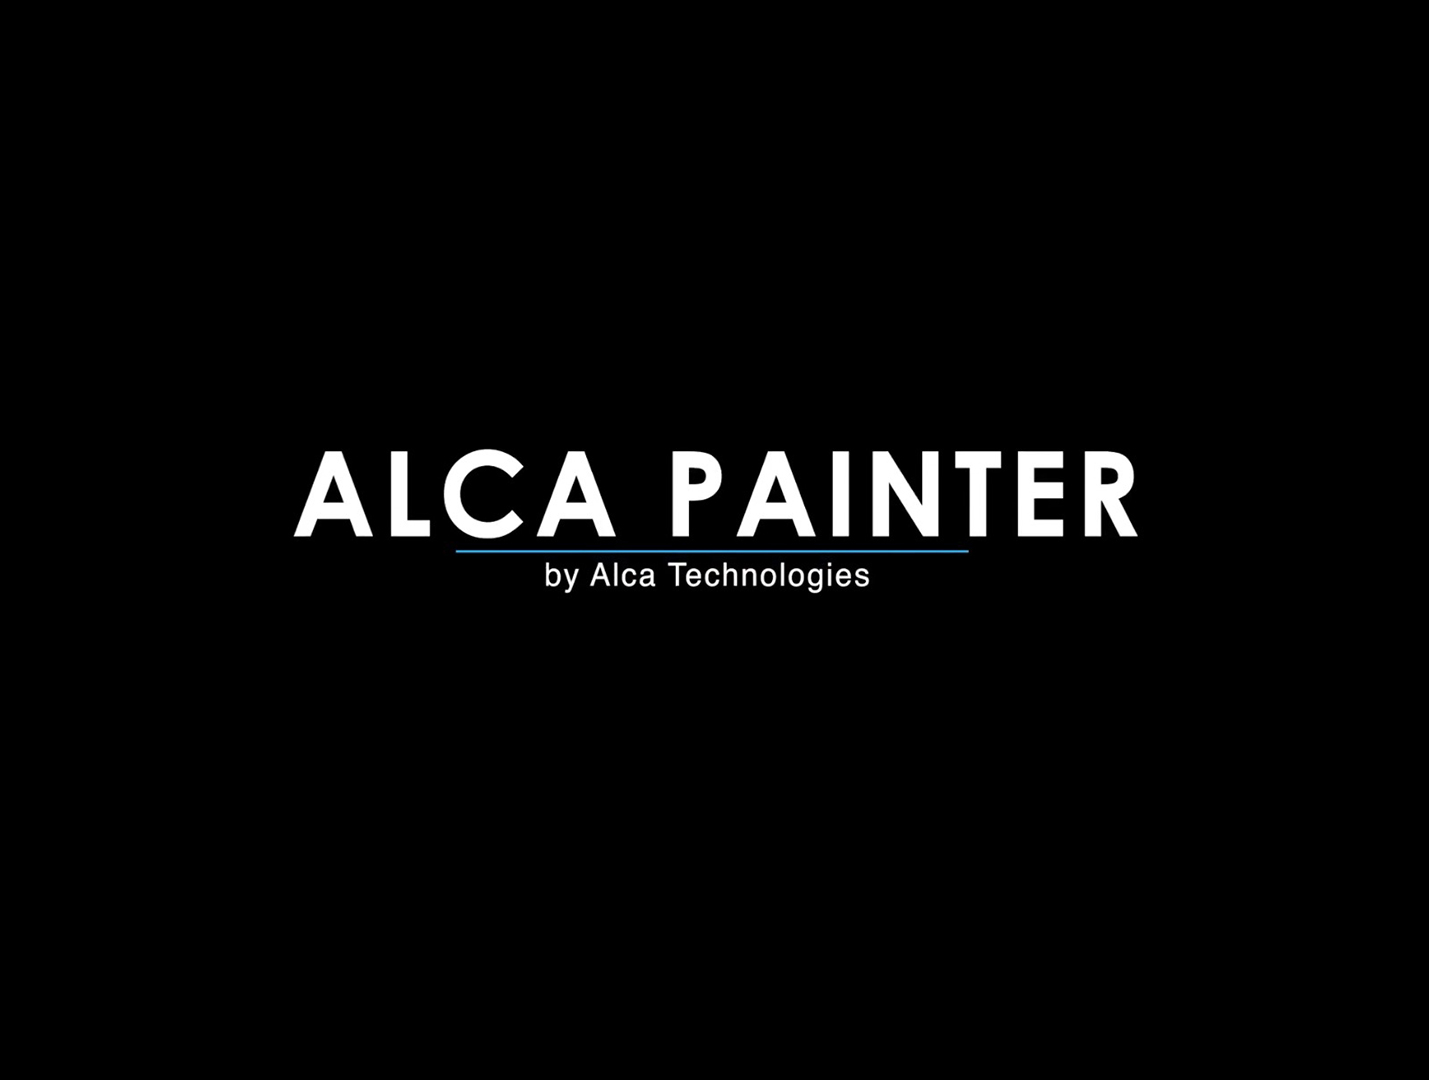 ALCA PAINTER